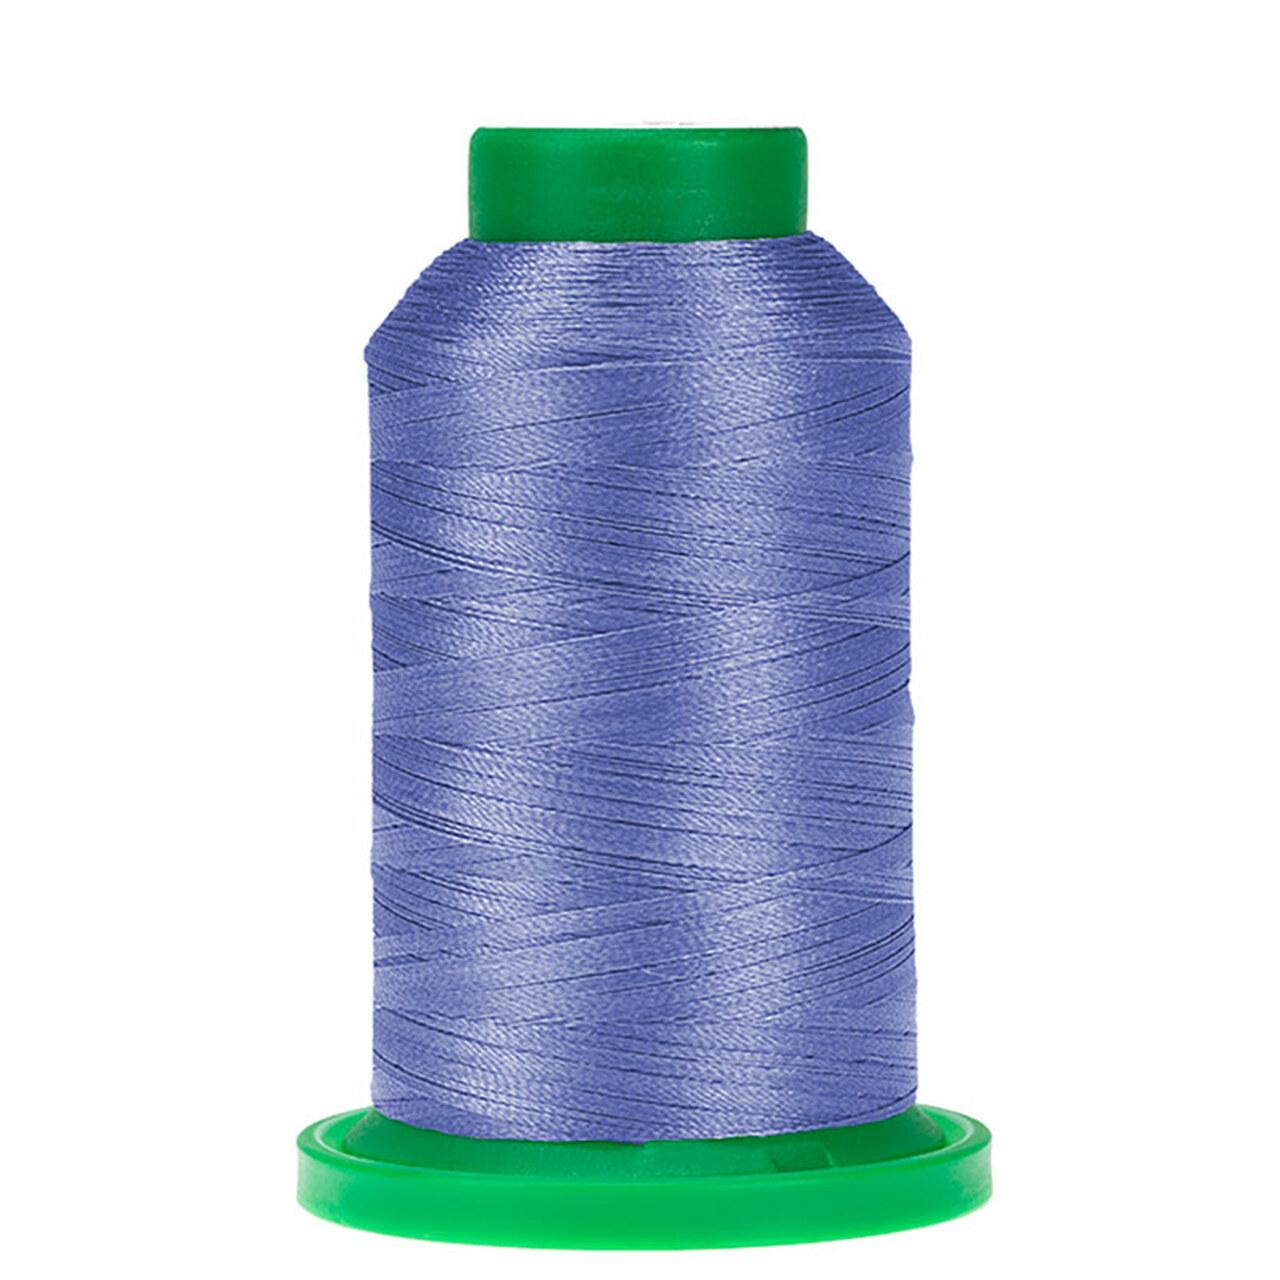 Thread - Isacord - Cadet Blue - 2922-3331